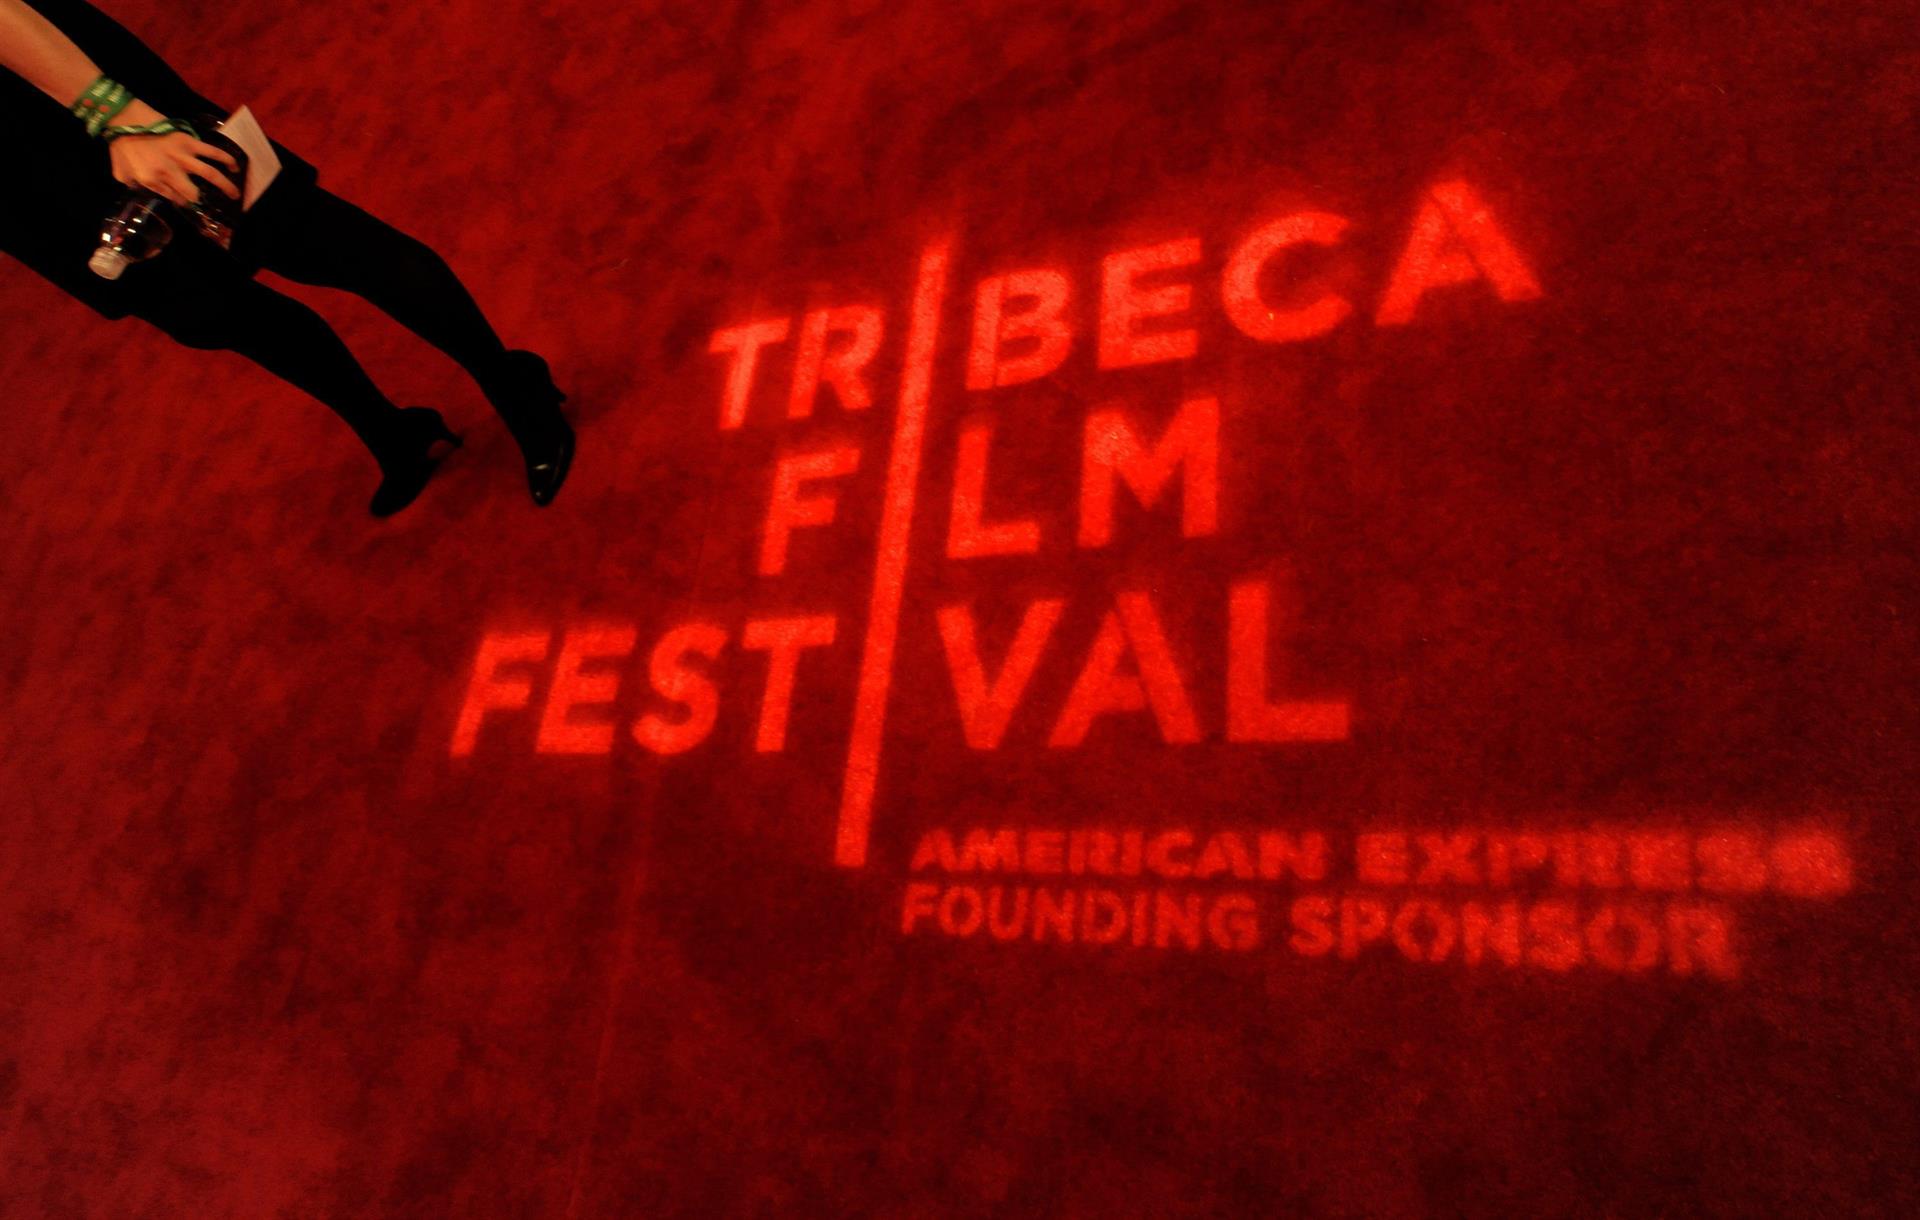 Con motivo de esta festividad, Tribeca proyectará 10 cortometrajes de directores negros, indígenas o de otras minorías étnicas dentro del programa "Rising Voices" (Voces que se alzan, en español), así como cuatro documentales de cuatro directoras afroamericanas, entre otras cintas. EFE/Peter Foley/Archivo